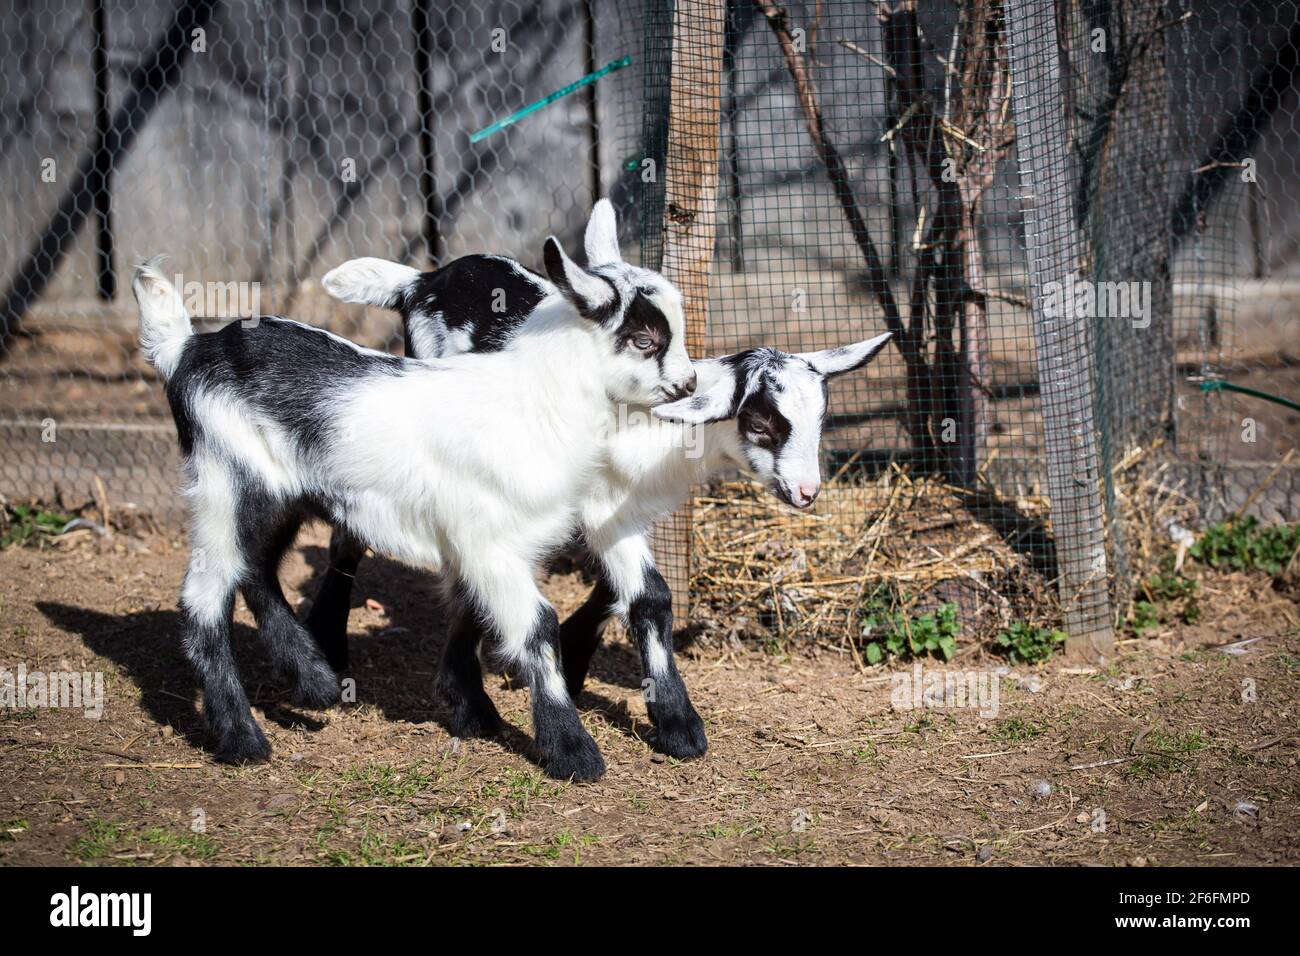 Deux chevreaux de la race 'Pfauenziege' (chèvre de paon), une espèce de chèvre autrichienne en voie de disparition Banque D'Images